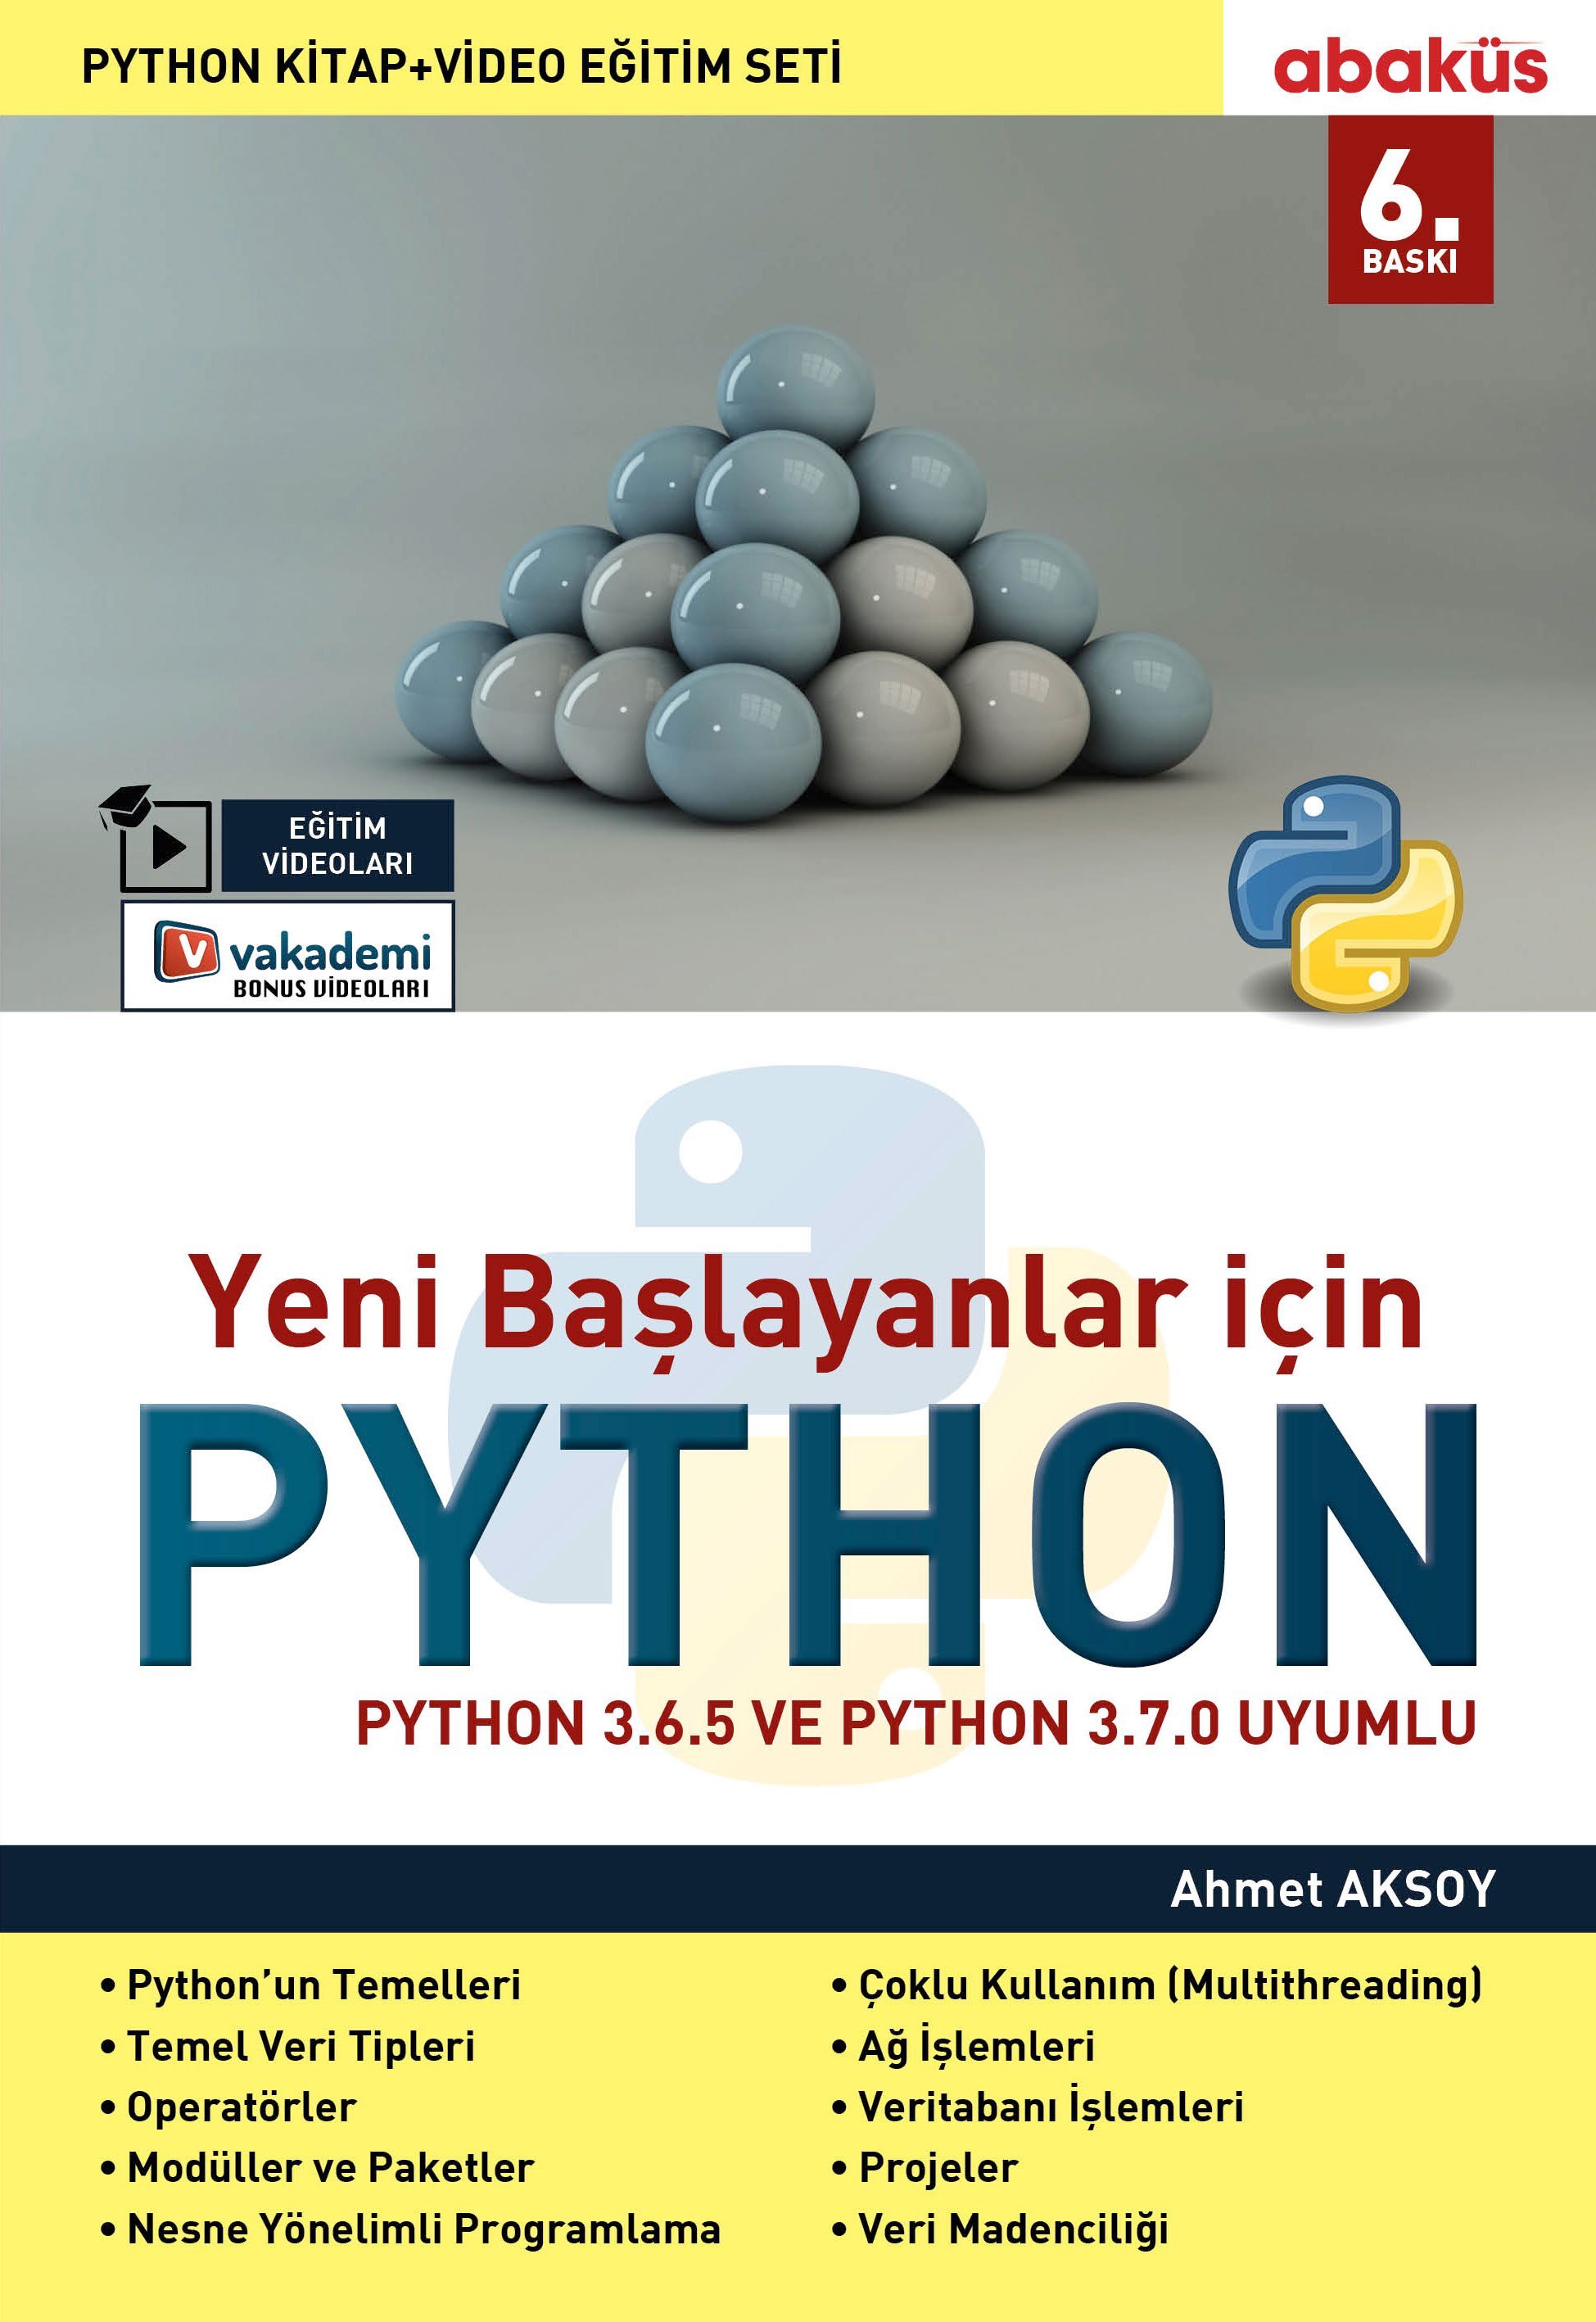 https://www.abakuskitap.com/Yeni-Baslayanlar-icin-Python-Egitim-Videolu,PR-613.html